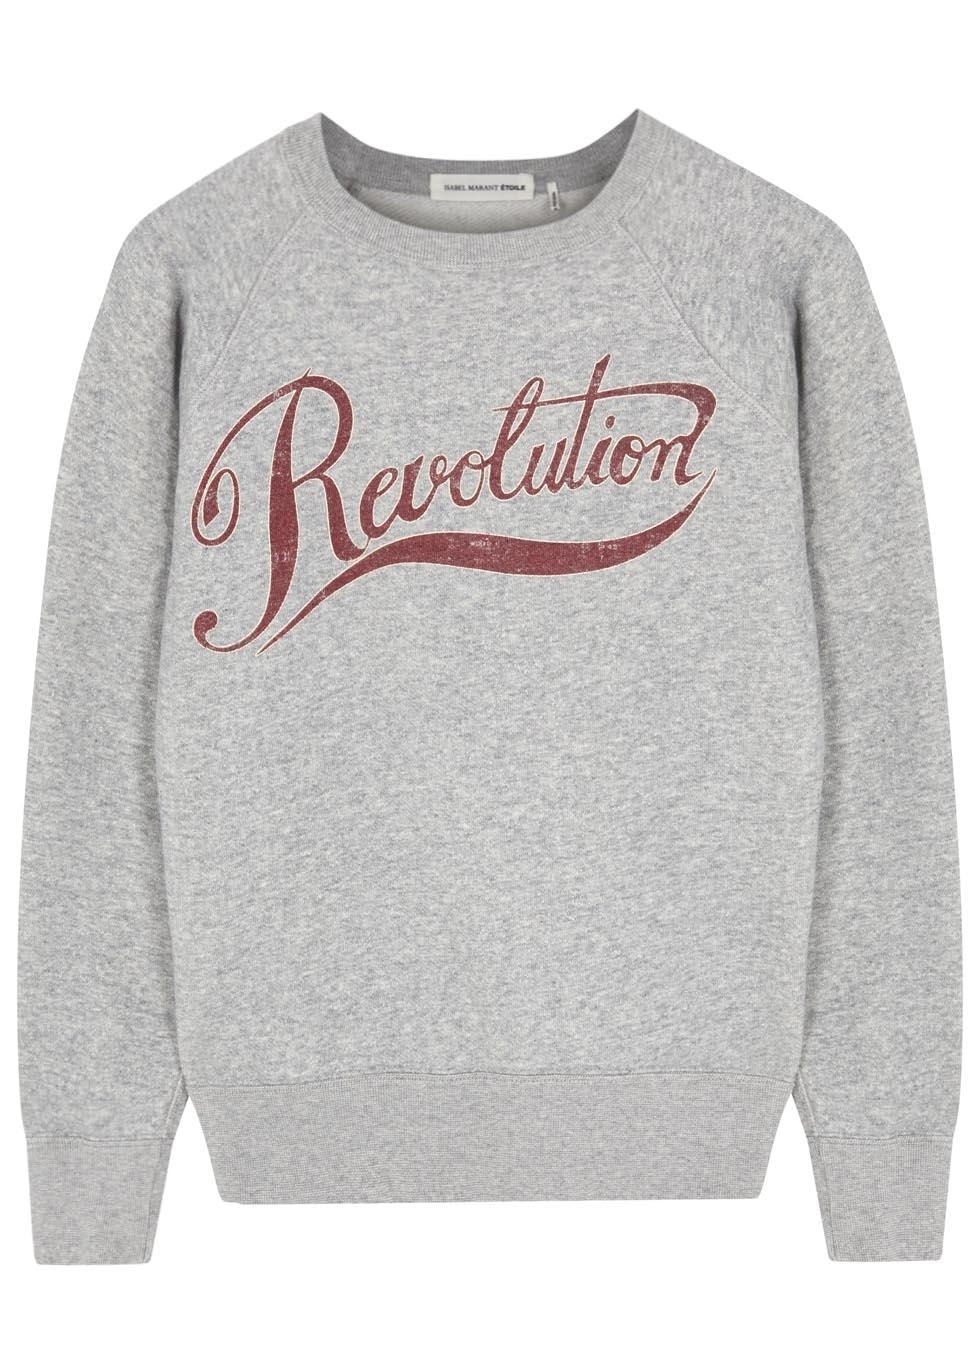 Gen Revolution print cotton blend sweatshirt